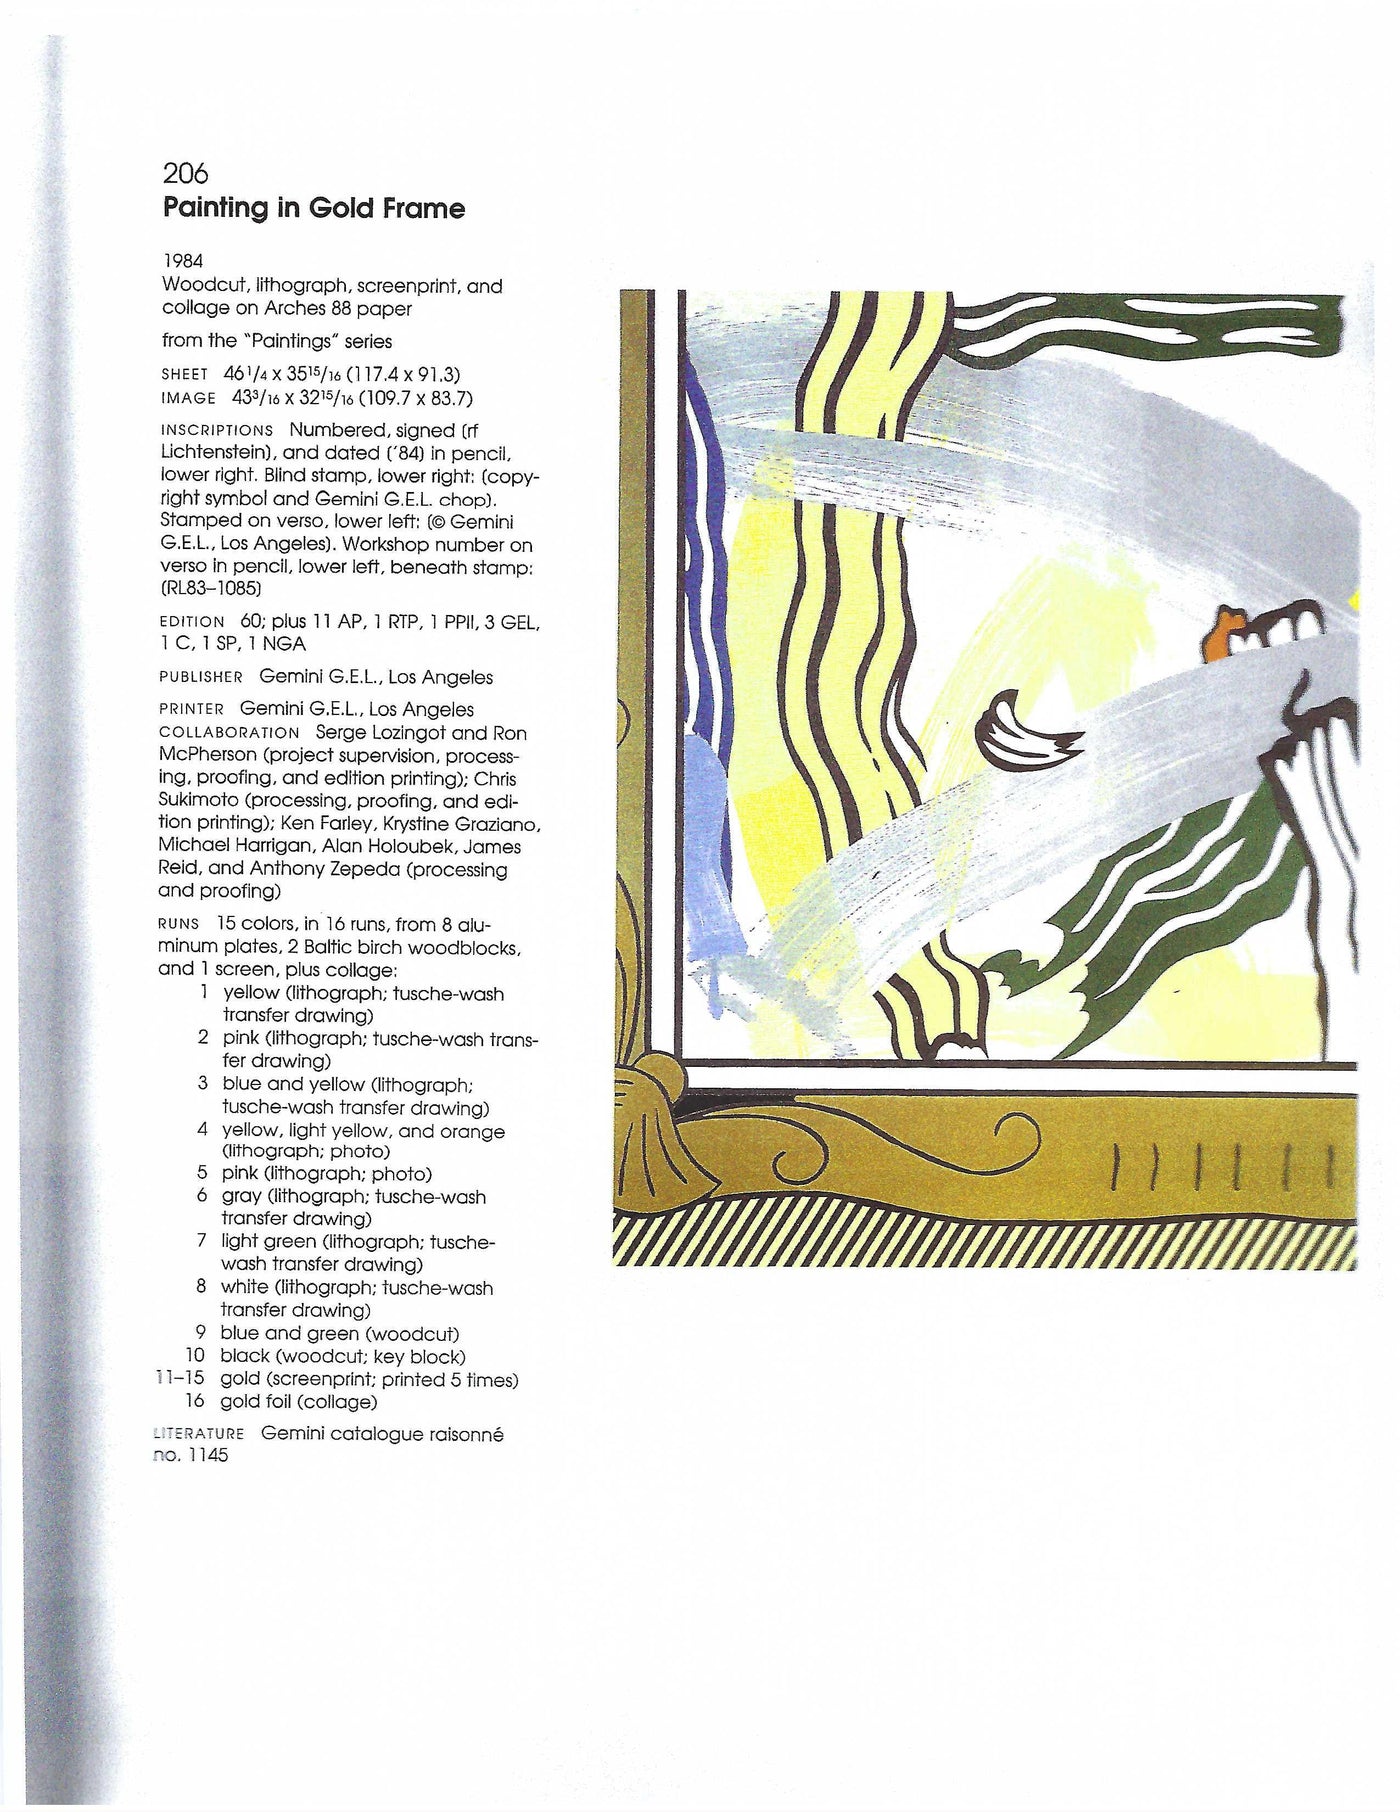 Roy Lichtenstein Painting in Gold Frame (Corlett 206) 1984